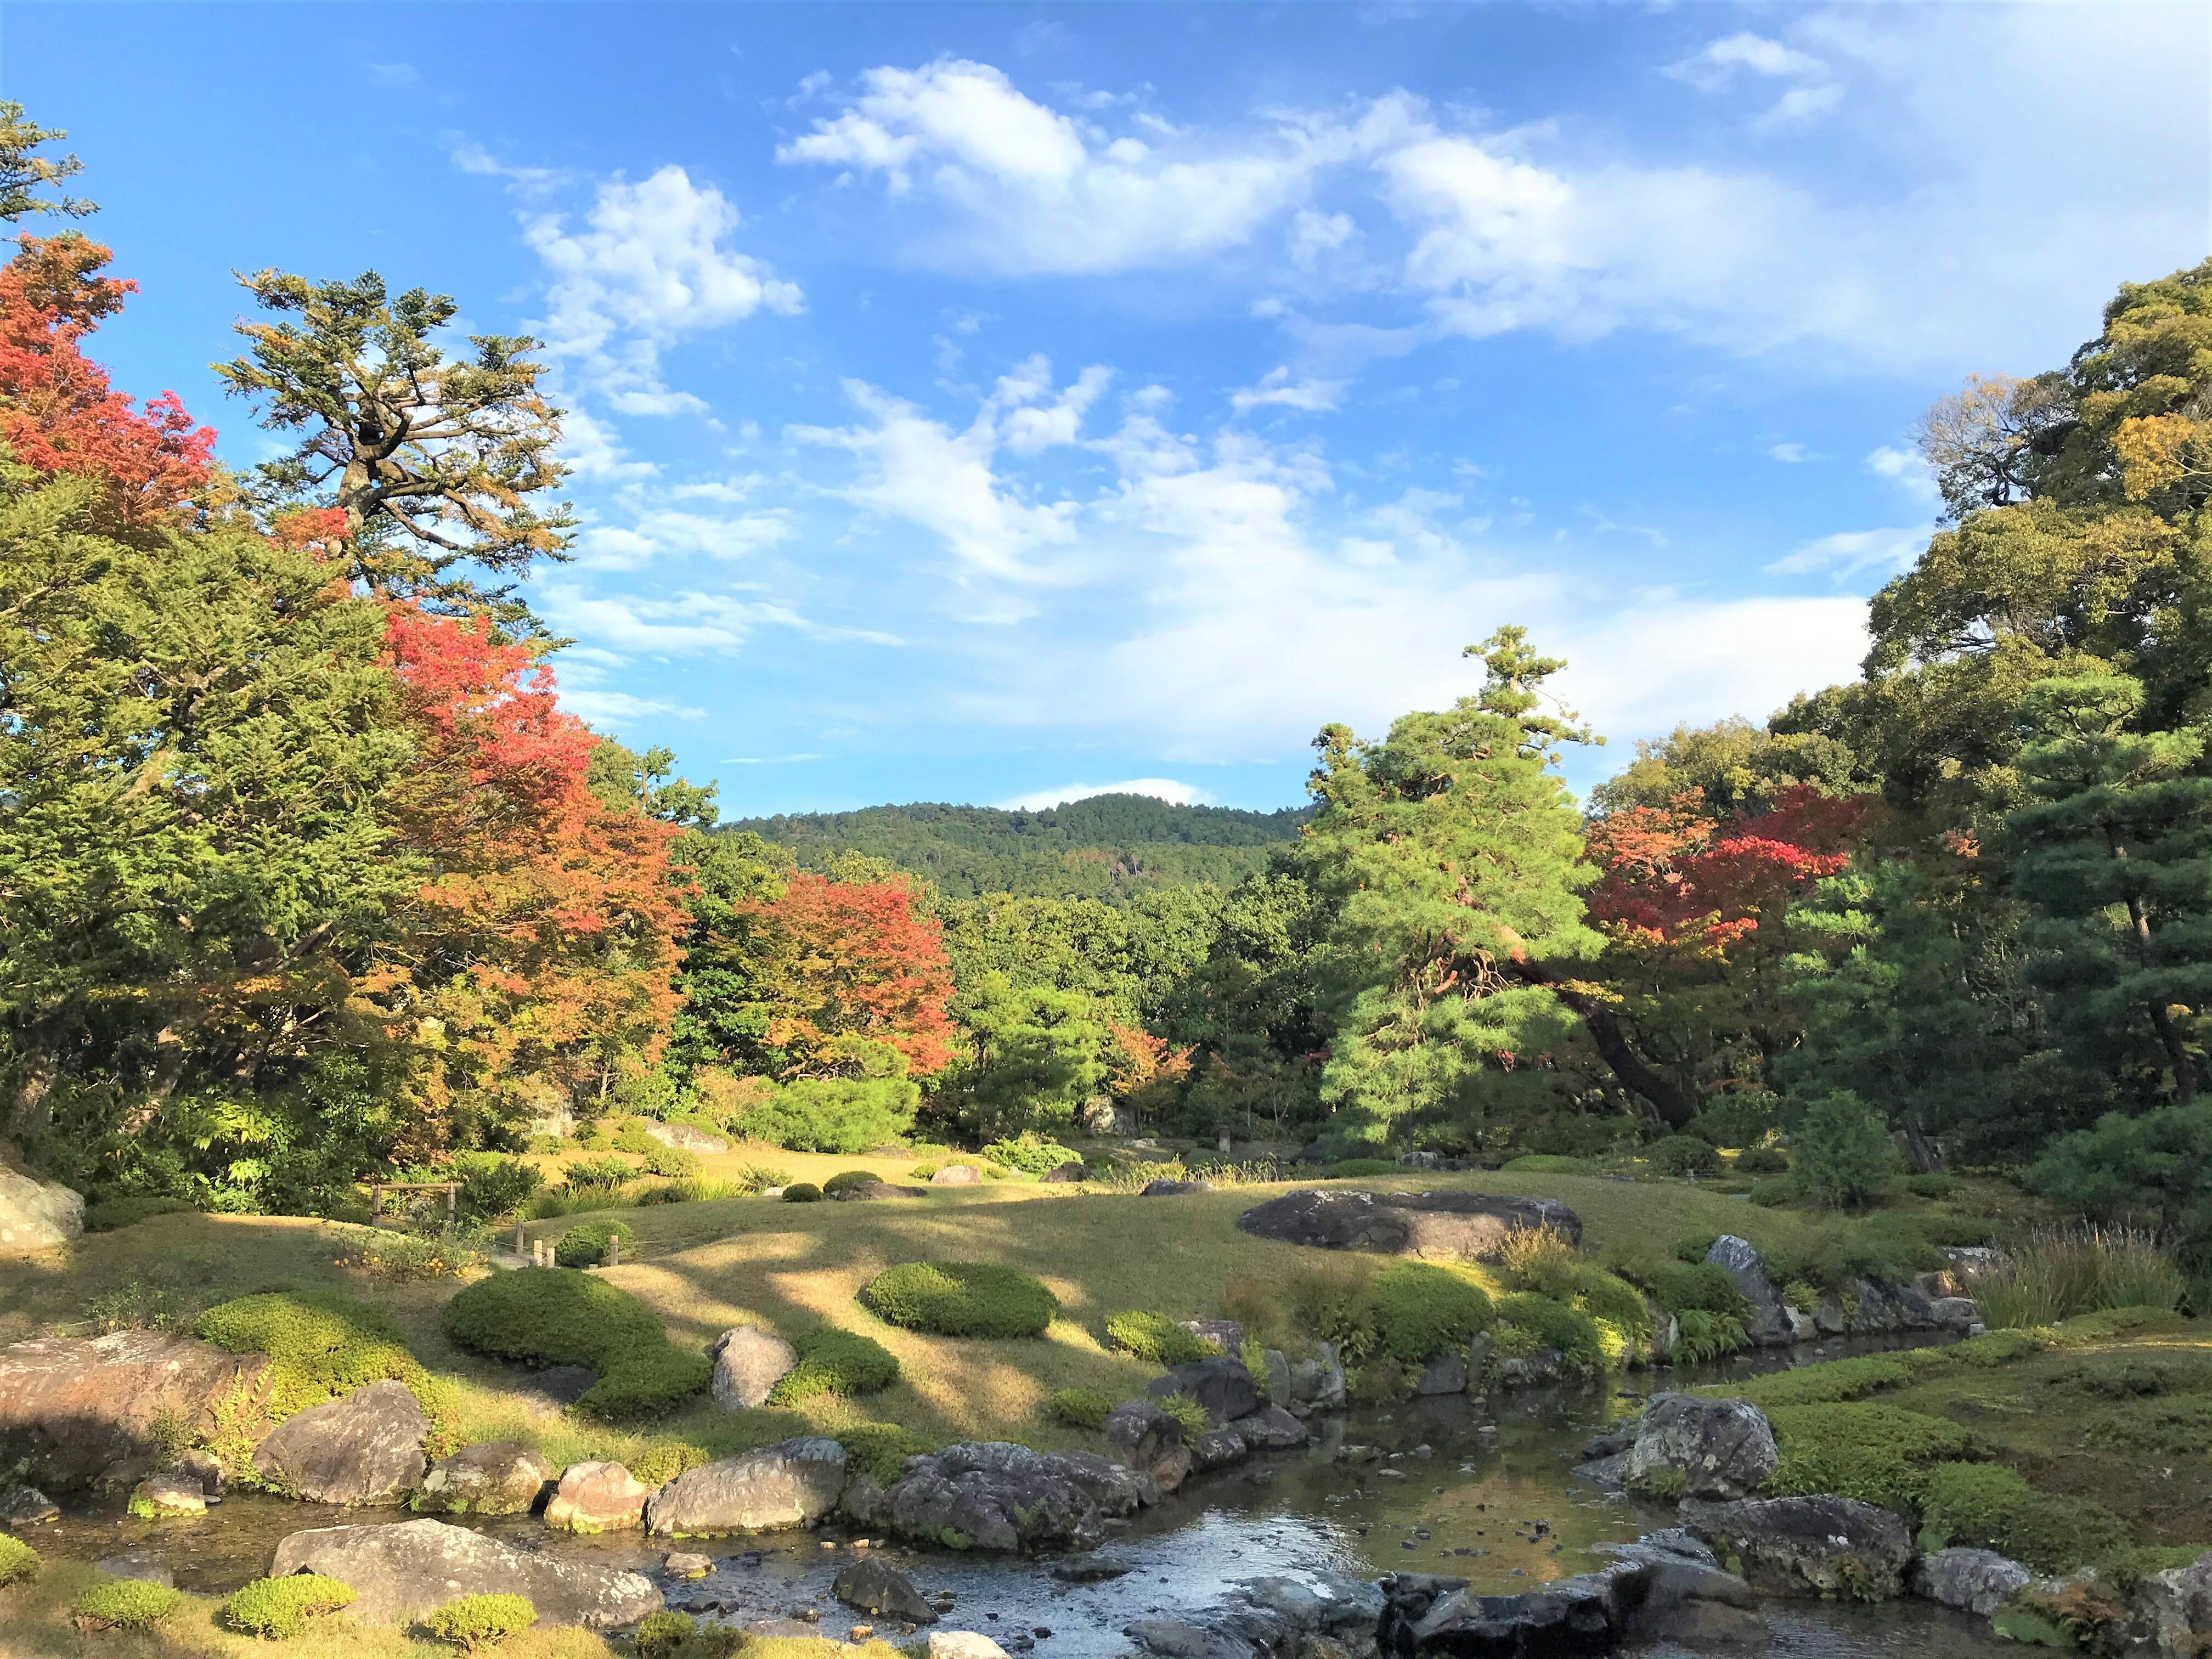 【京都】名勝庭園の紅葉を眺めながらカフェを楽しめる！「無鄰菴」で至福のひととき